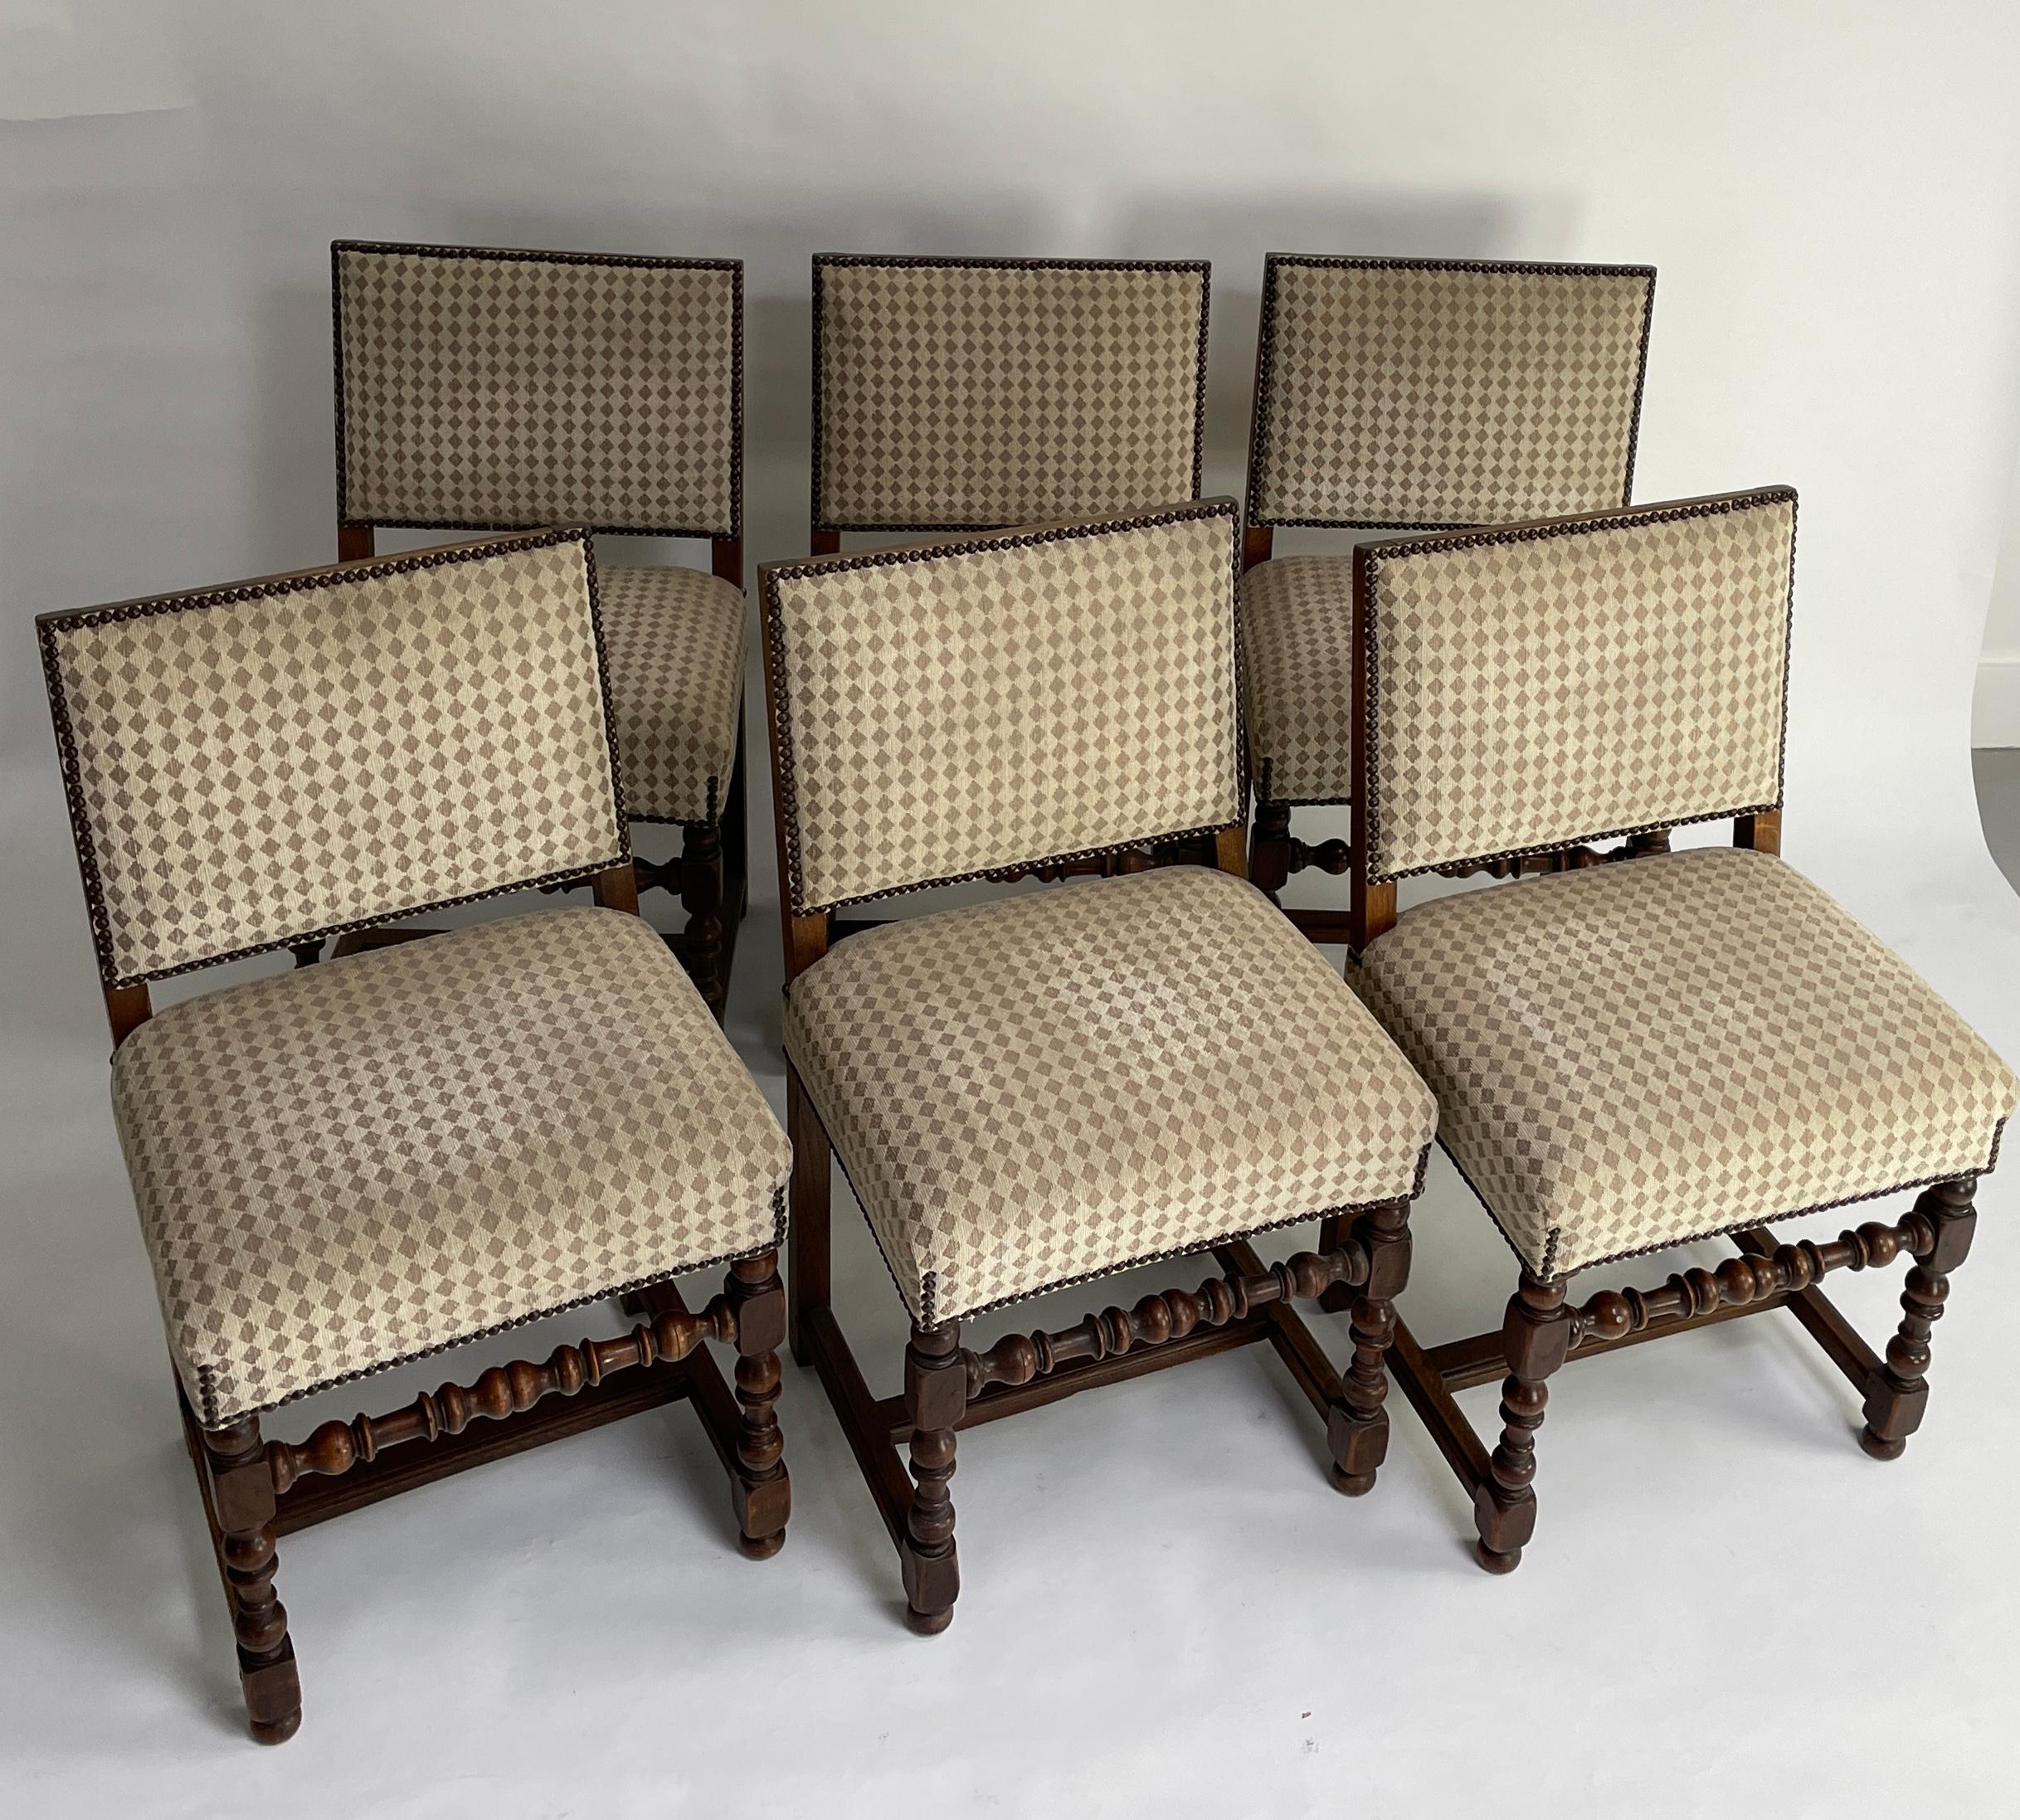 Satz von 6 Louis XIII Stil mit gedrechselten Holz Nussbaum Details.  Die Sitzkissen sind neu gepolstert.  